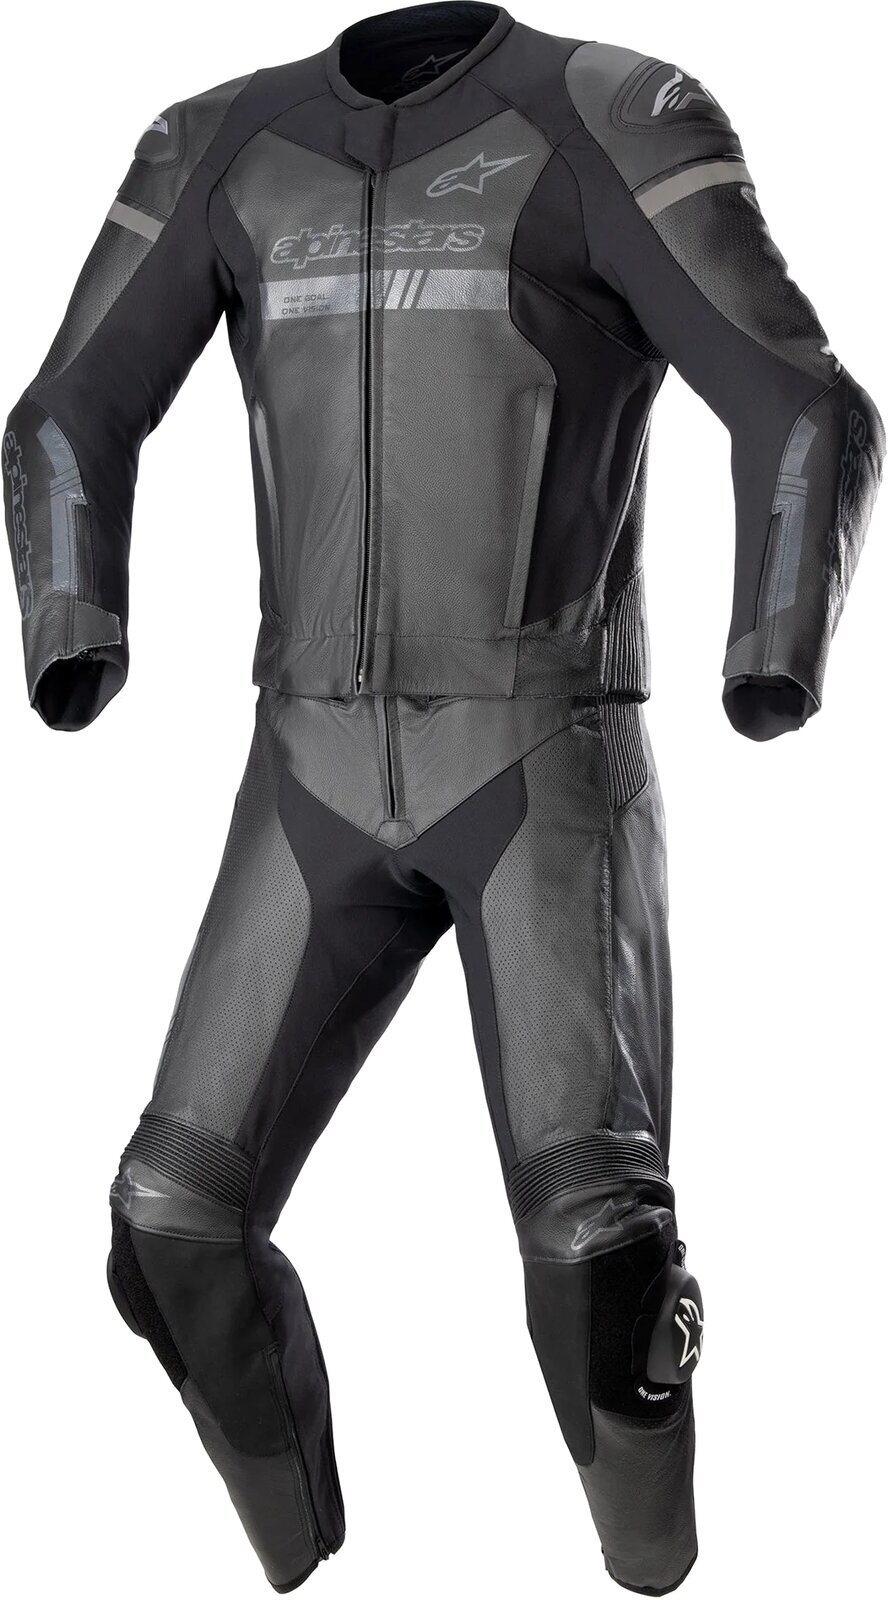 Todelt motorcykeldragt Alpinestars GP Force Chaser Leather Suit 2 Pc Black/Black 54 Todelt motorcykeldragt